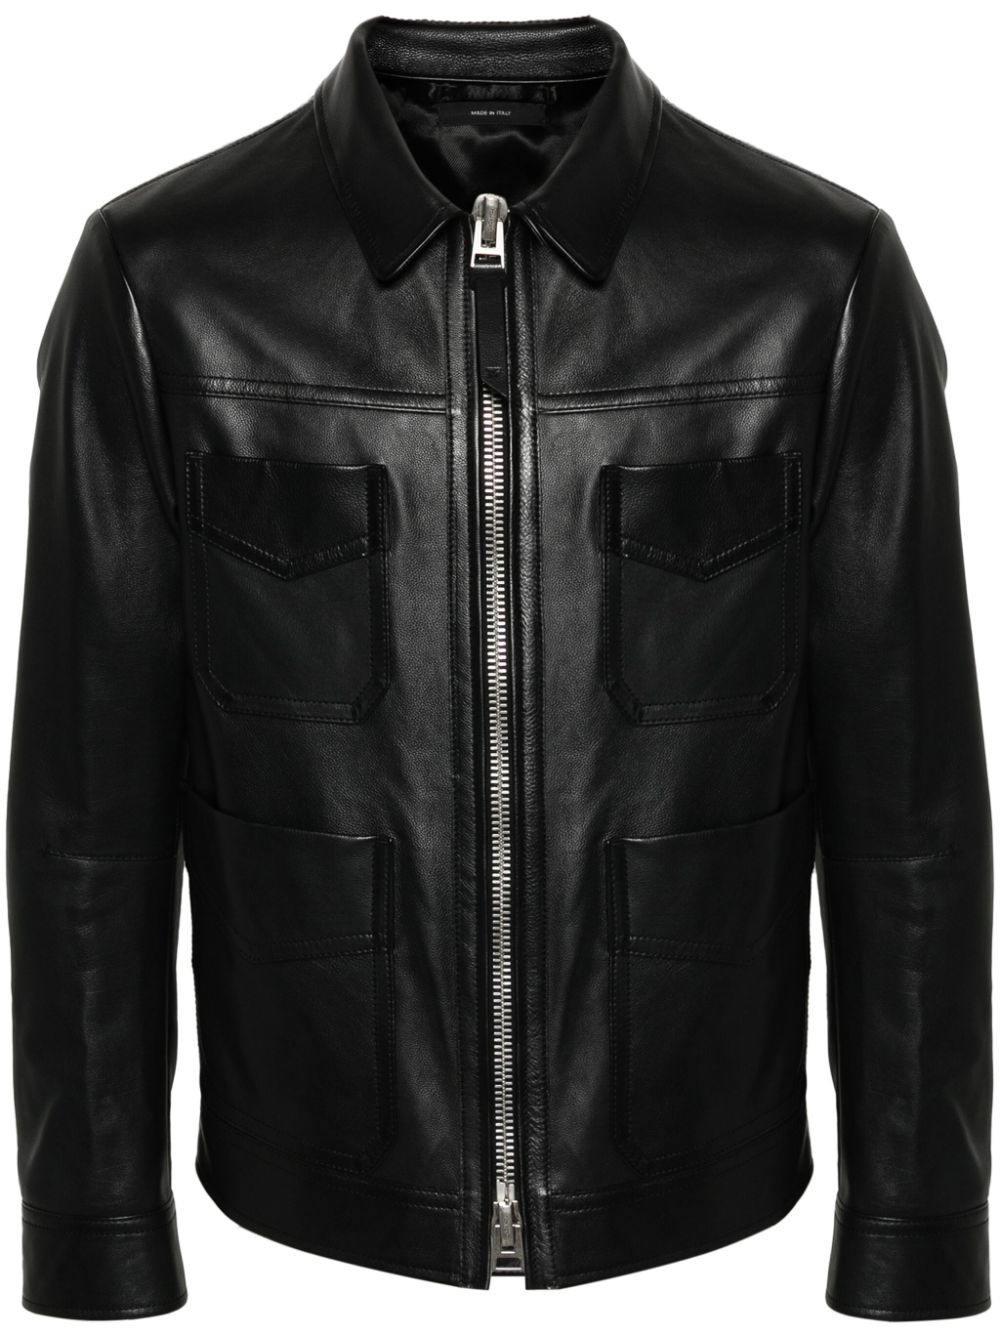 four-pocket leather jacket - 1